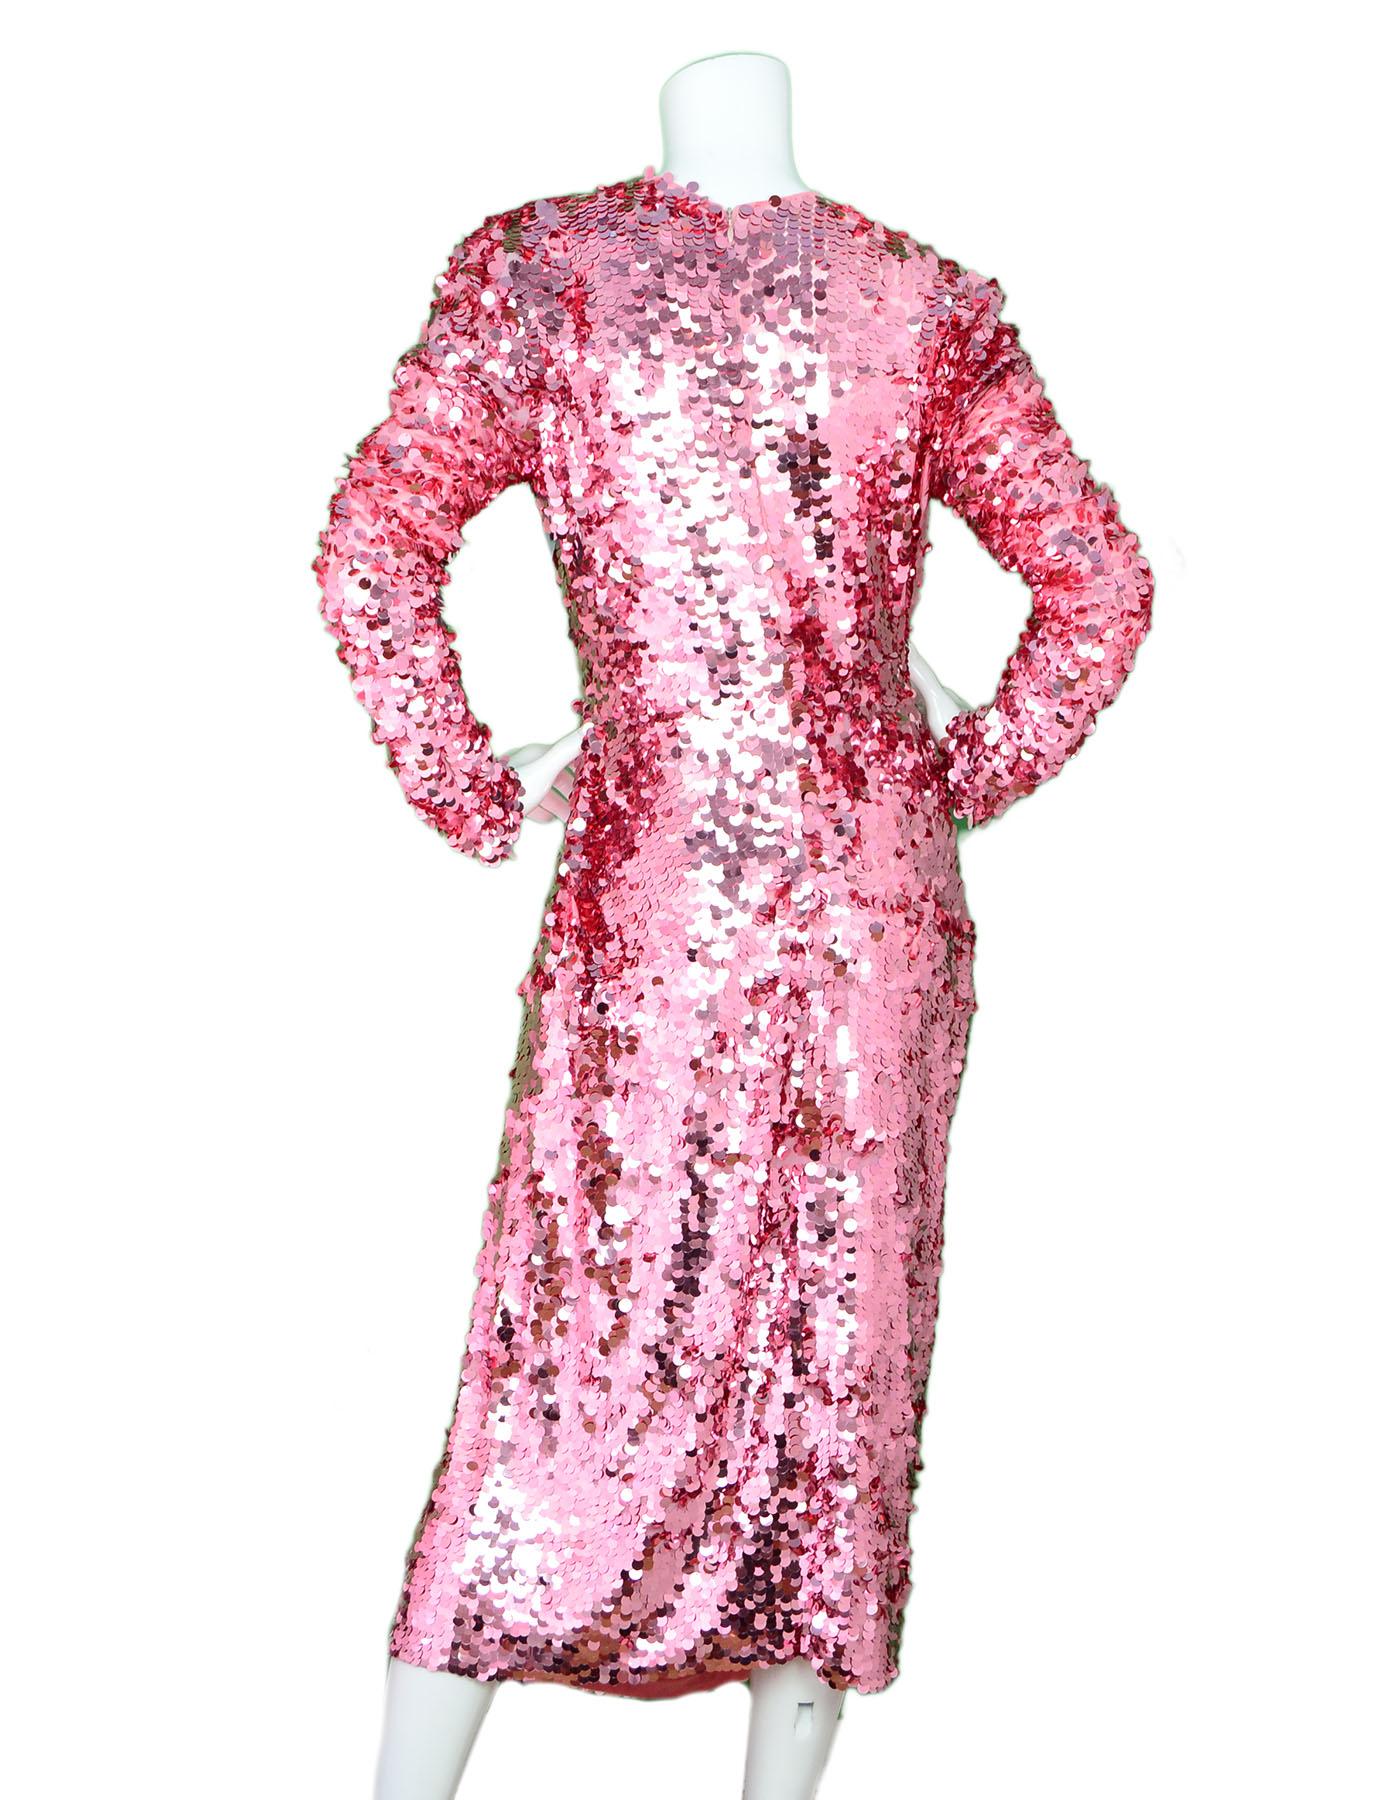 Women's PREEN By Thornton Bregazzi Pink Sequin & Tuelle Carlin Dress Sz XL NWT